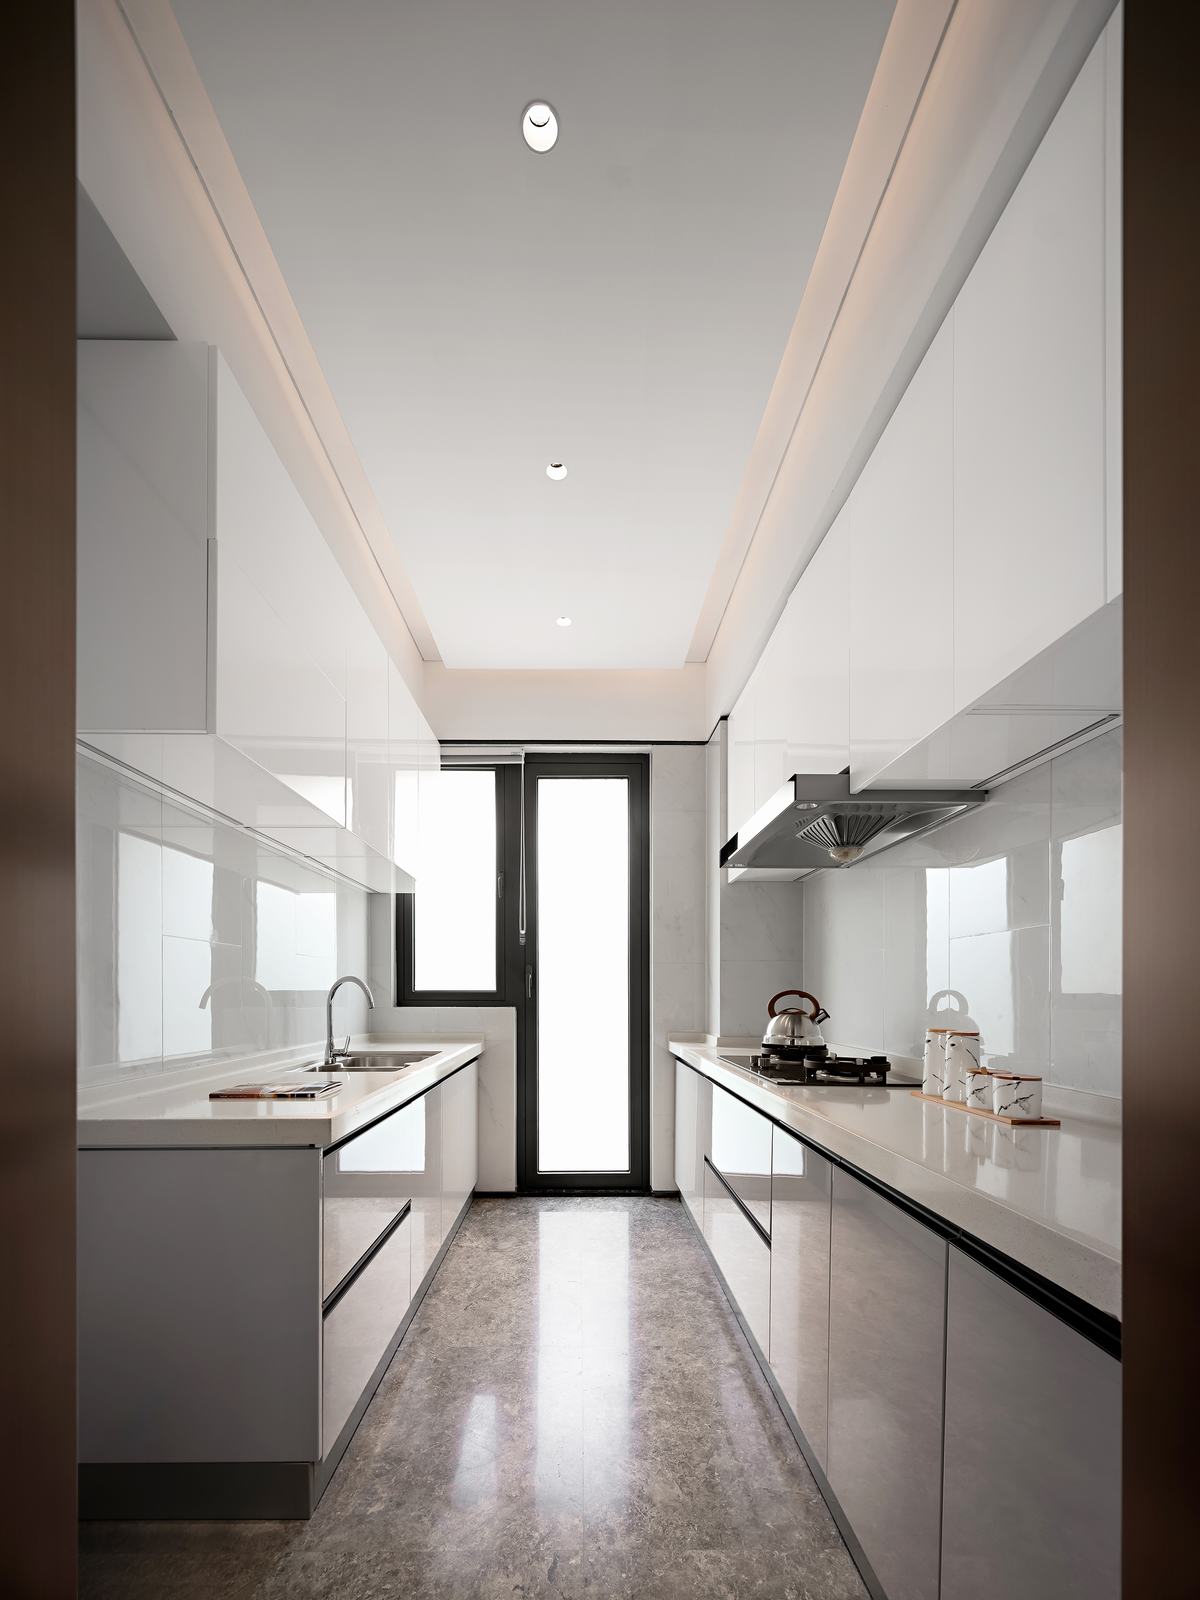 新中式風格室內設計家裝案例-廚房